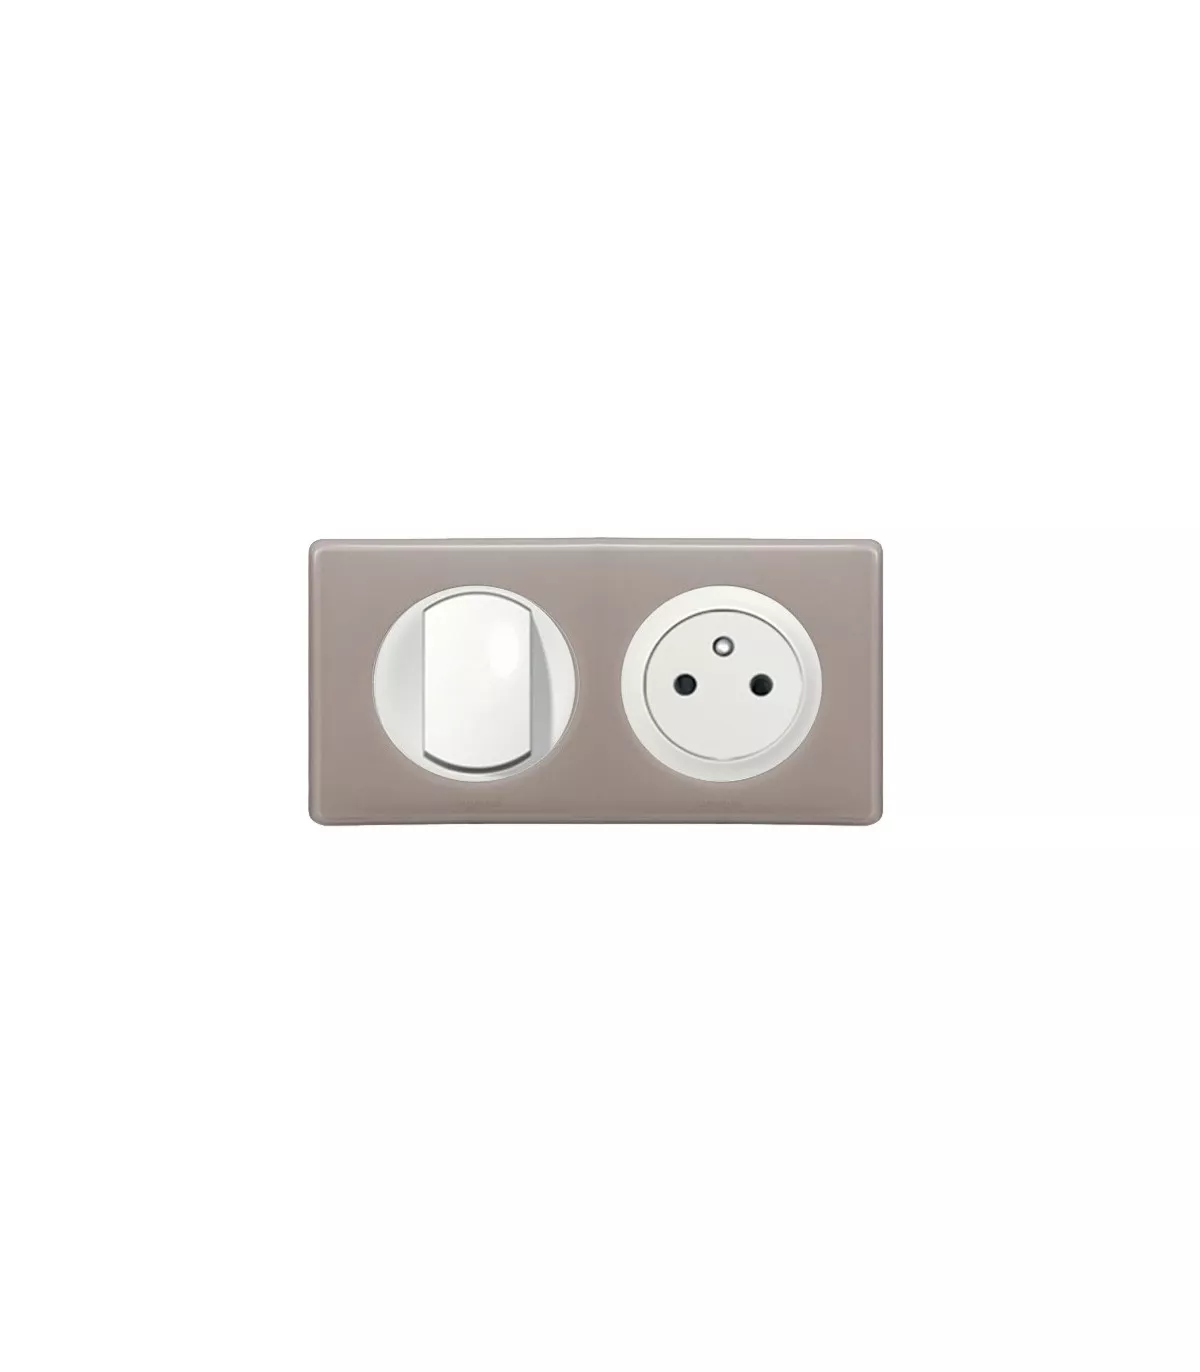 https://www.elecproshop.com/38364-superlarge_default/prise-de-courant-interrupteur-plaque-2-postes-celiane-galet.webp